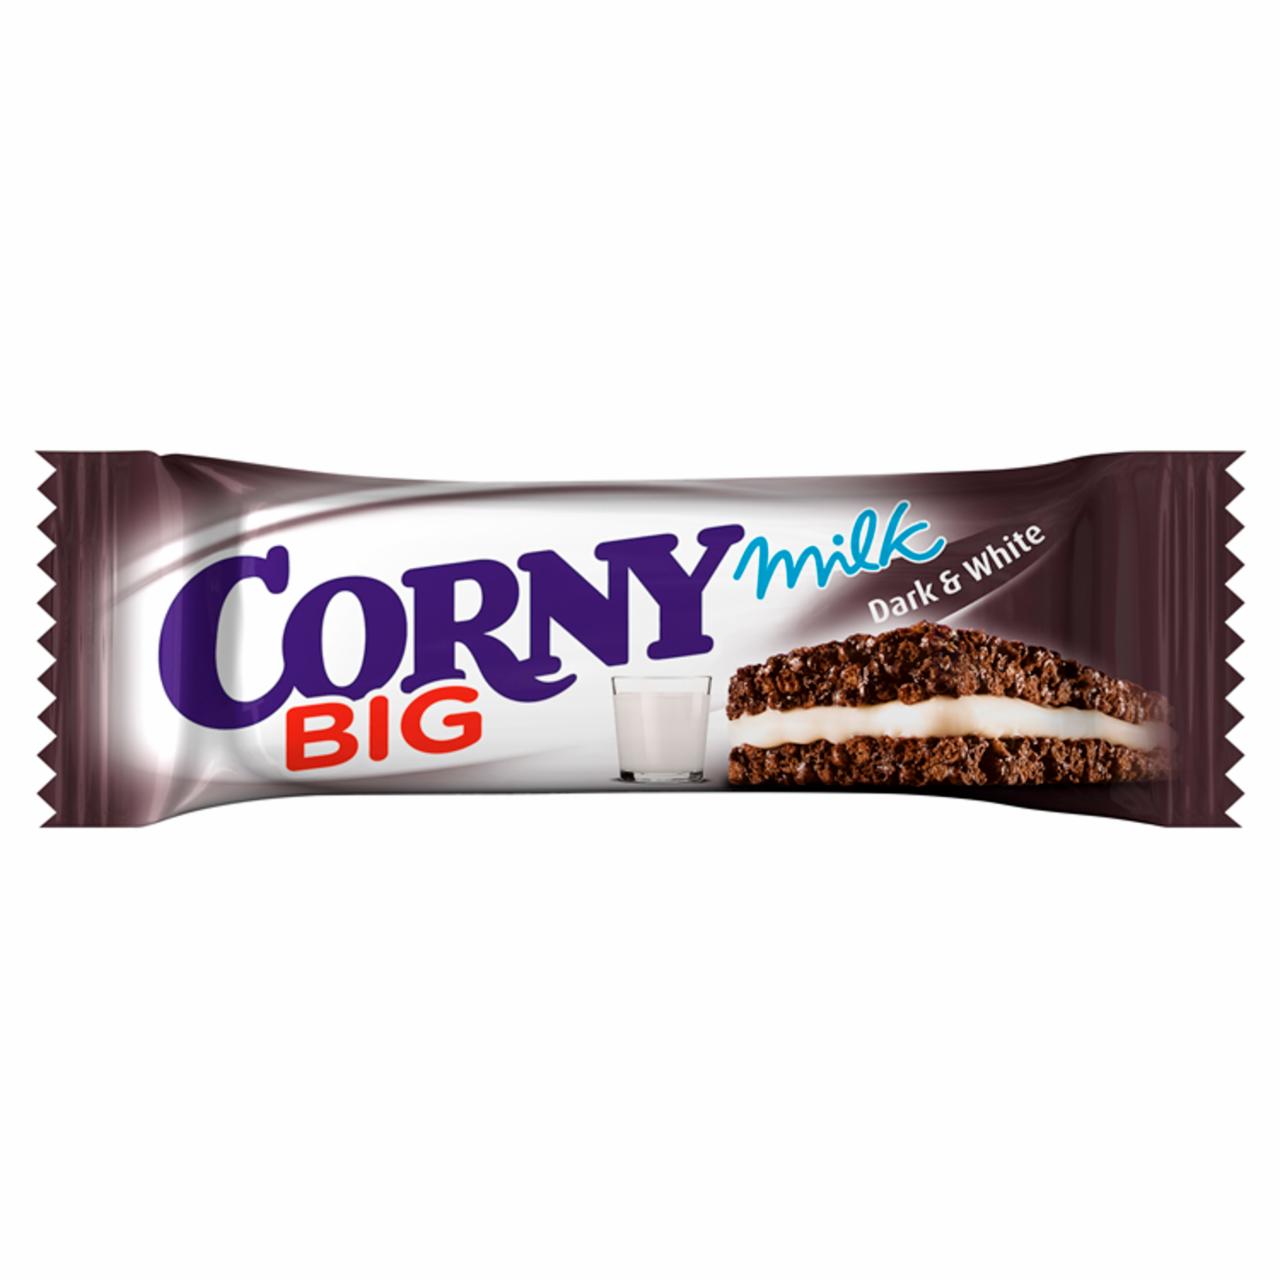 Képek - Corny Big Milk kakaós gabonaszendvics tejkrém töltelékkel 40 g